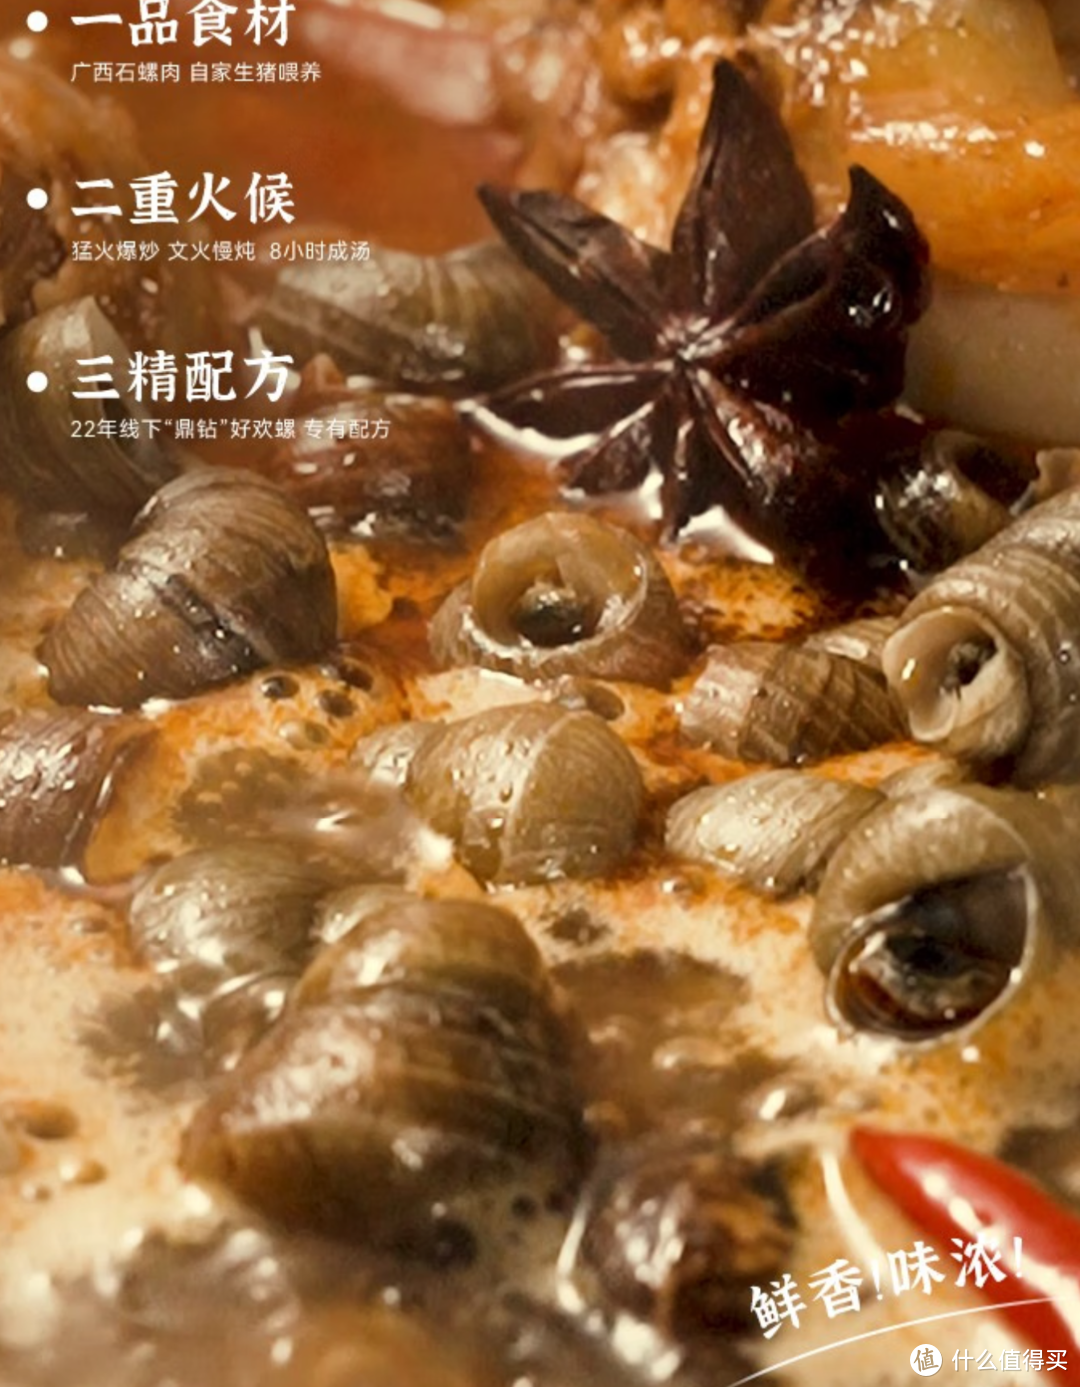 非常好吃的 好欢螺 螺狮粉